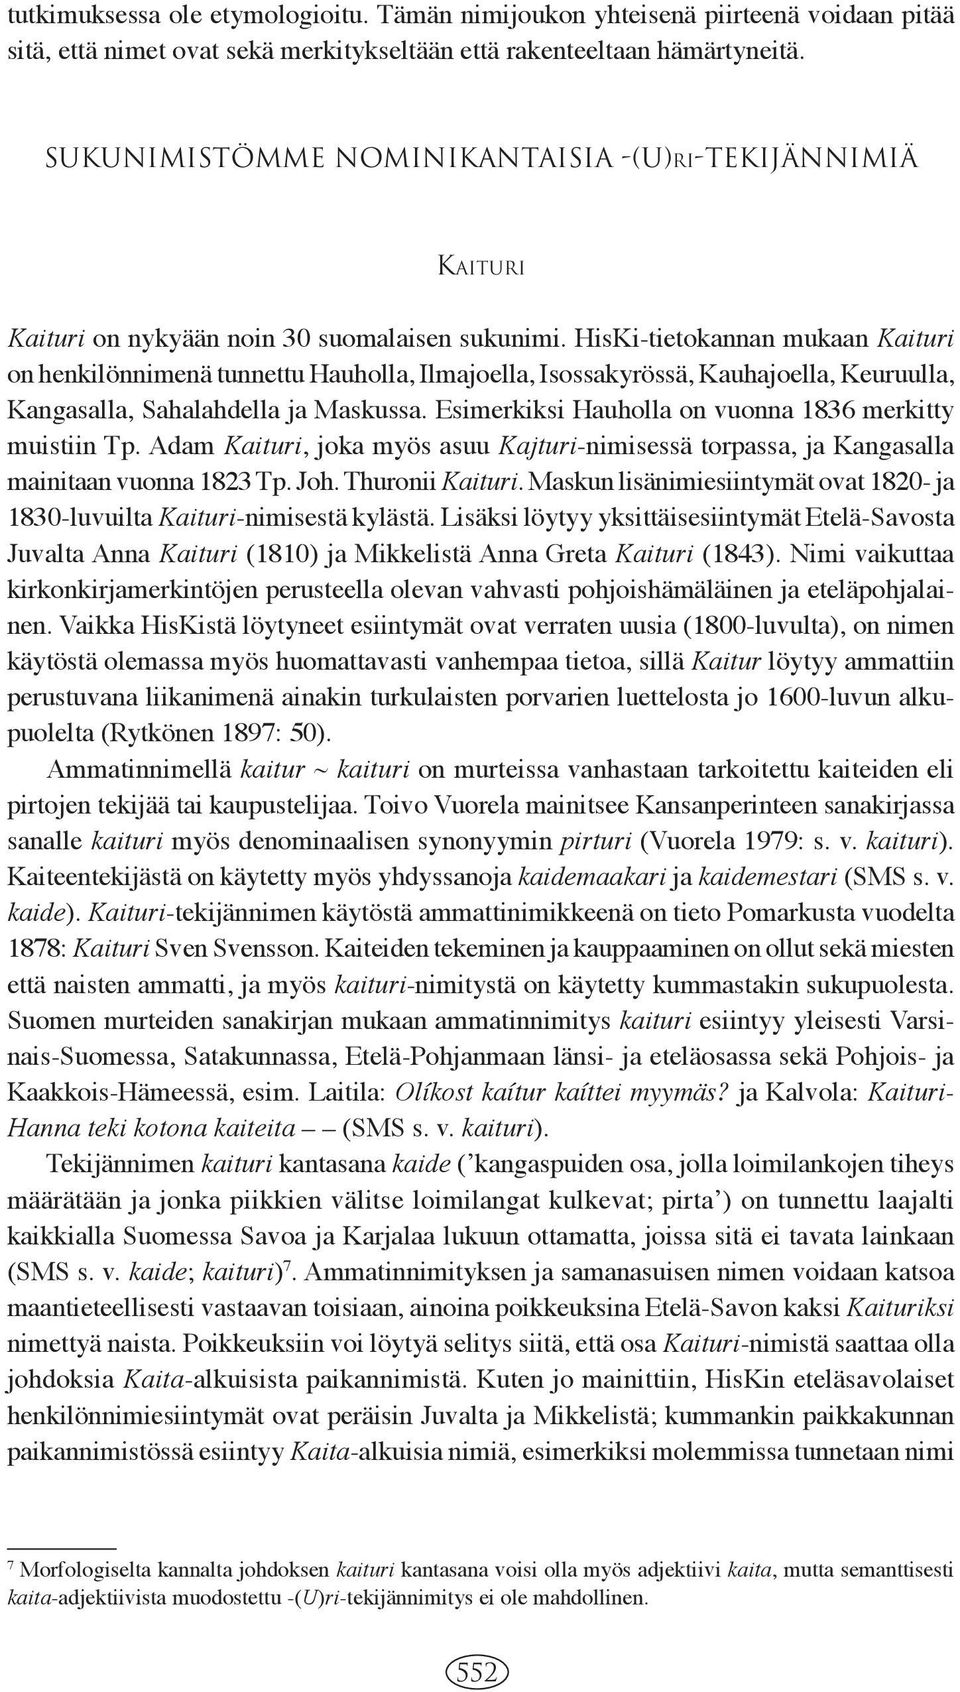 HisKi-tietokannan mukaan Kaituri on henkilönnimenä tunnettu Hauholla, Ilmajoella, Isossakyrössä, Kauhajoella, Keuruulla, Kangasalla, Sahalahdella ja Maskussa.